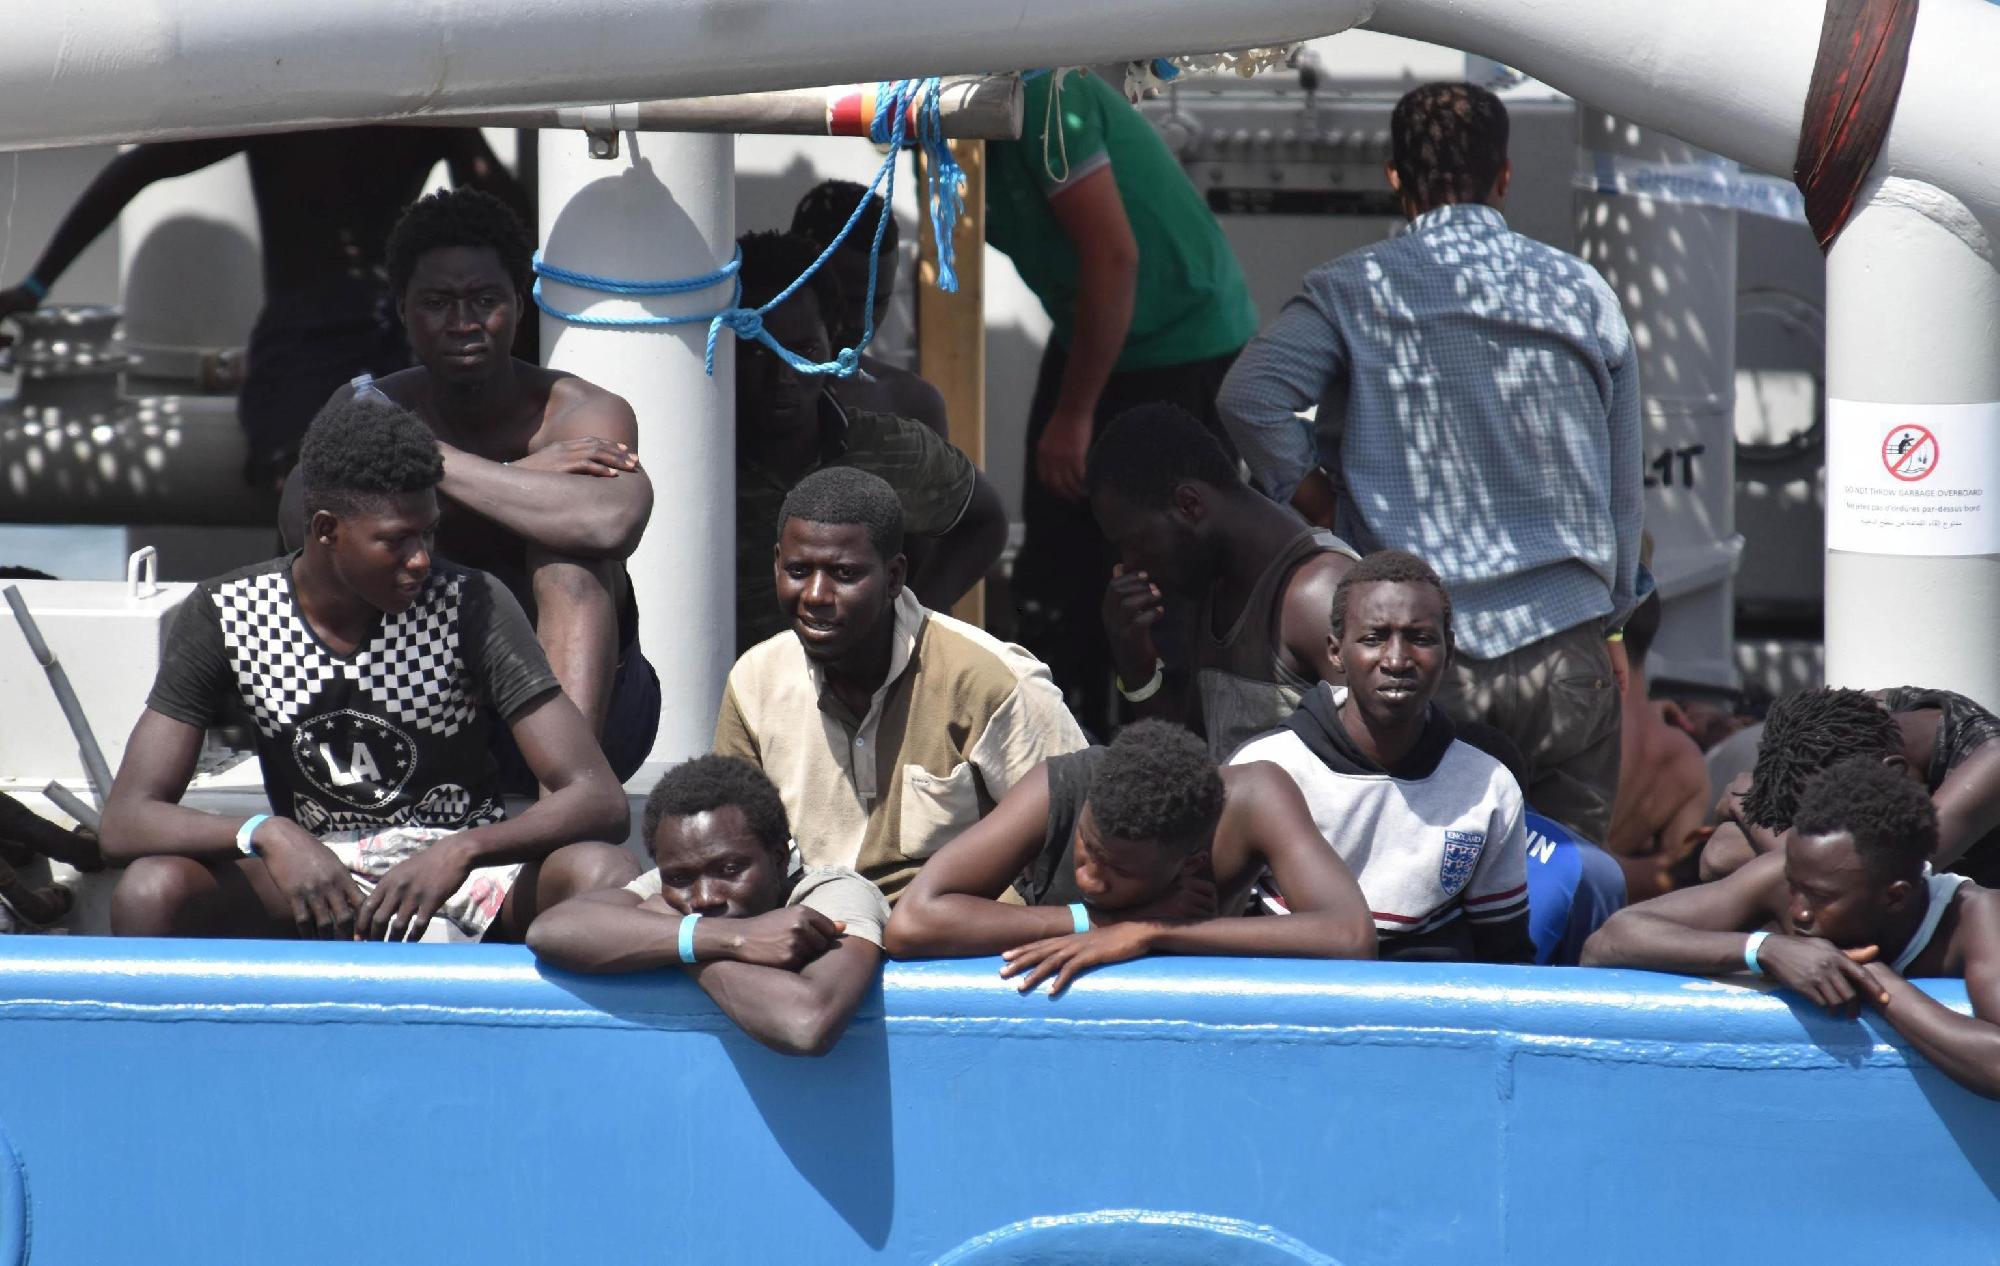 275 embert mentettek ki a Földközi-tengerből